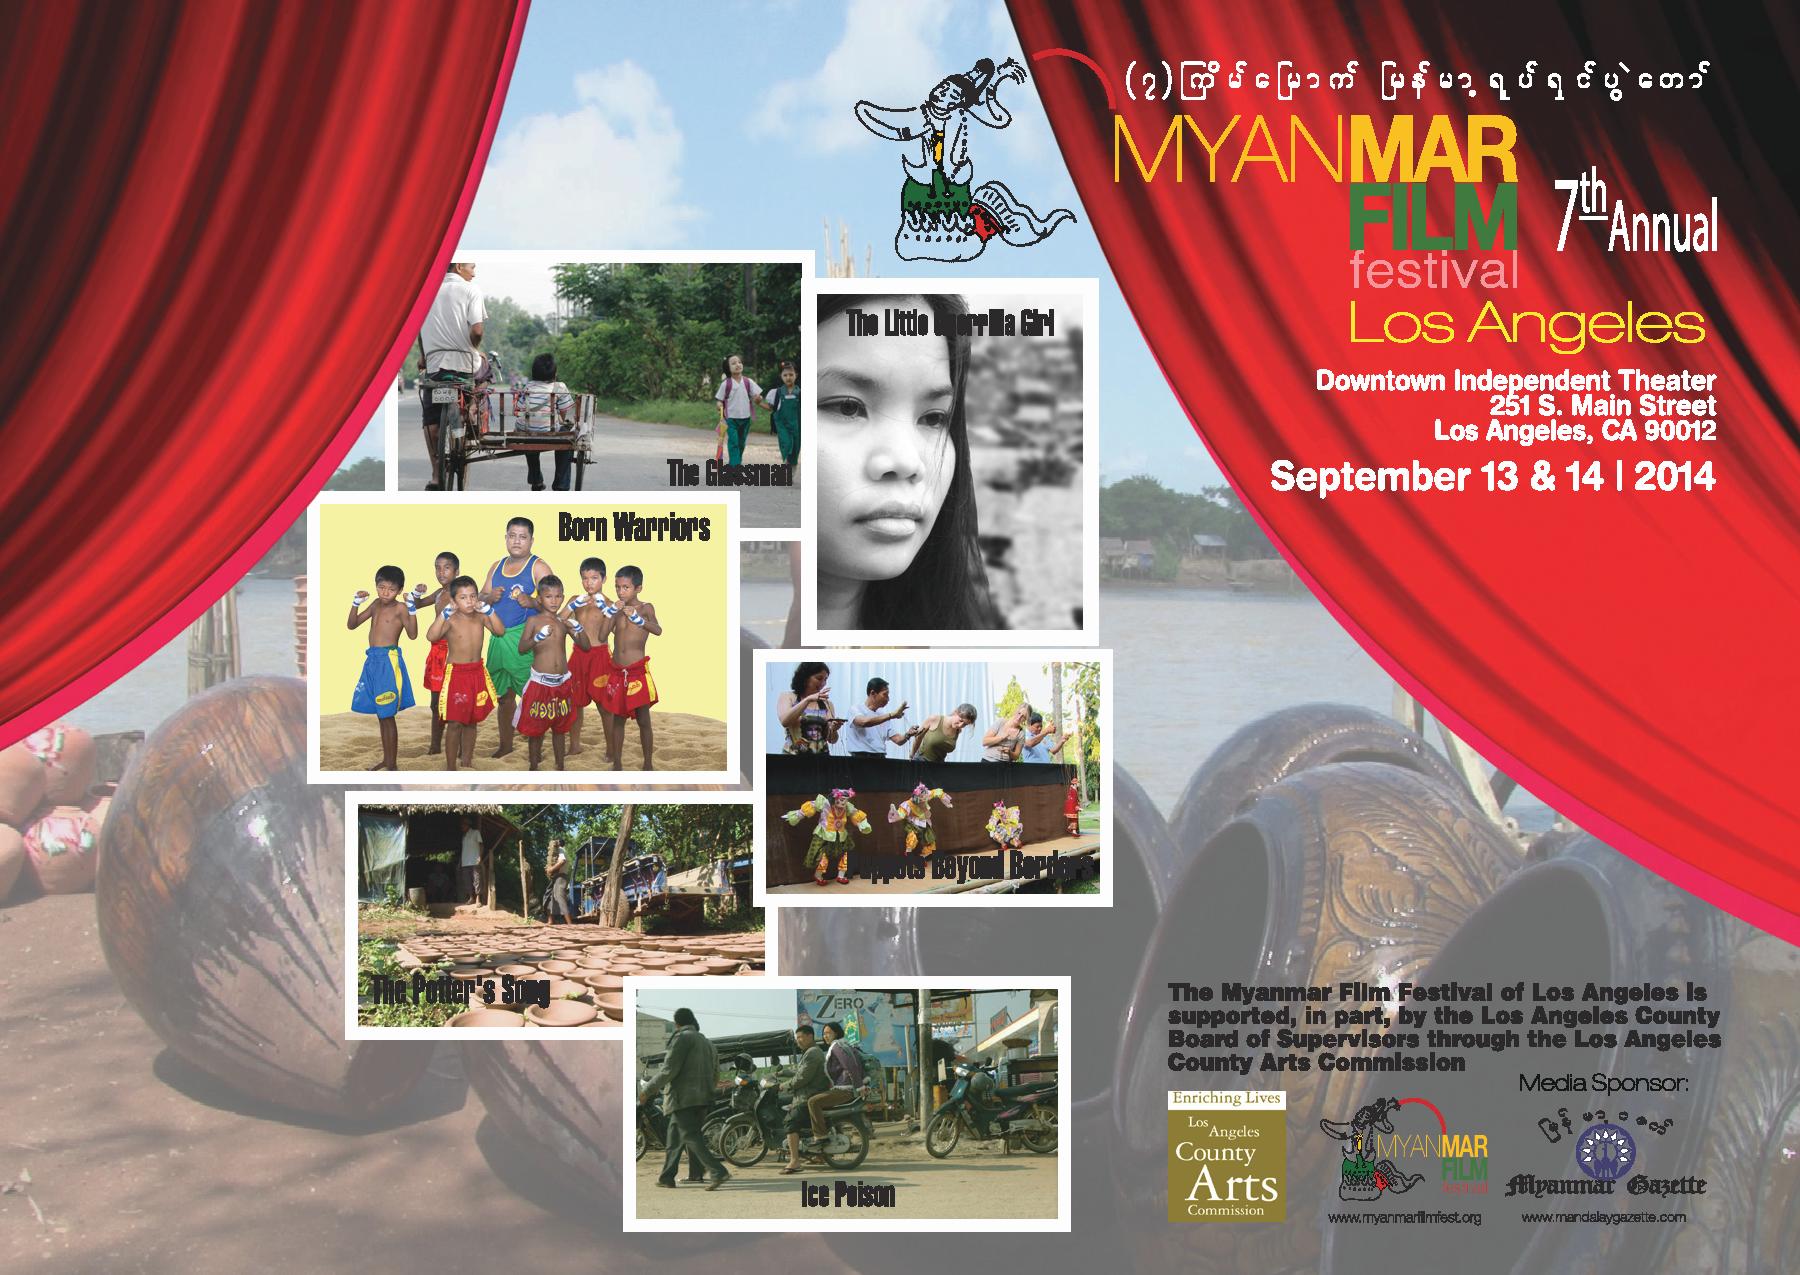 2014 Myanmar Film Festival of Los Angeles is on September 13 & 14, 2014!